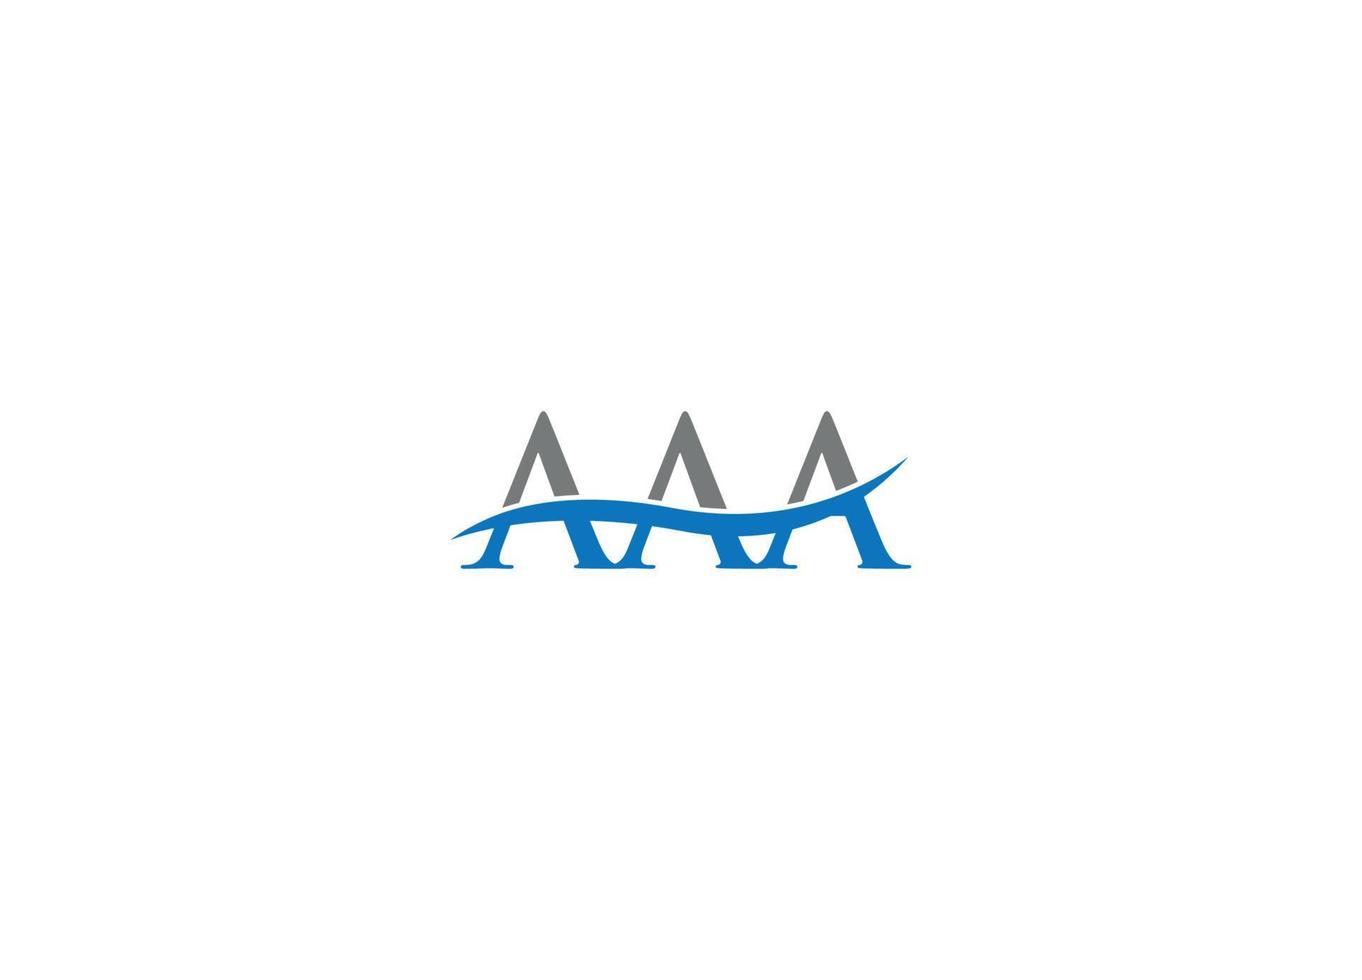 modelo de ícone de vetor de design de logotipo moderno criativo inicial de carta aaa